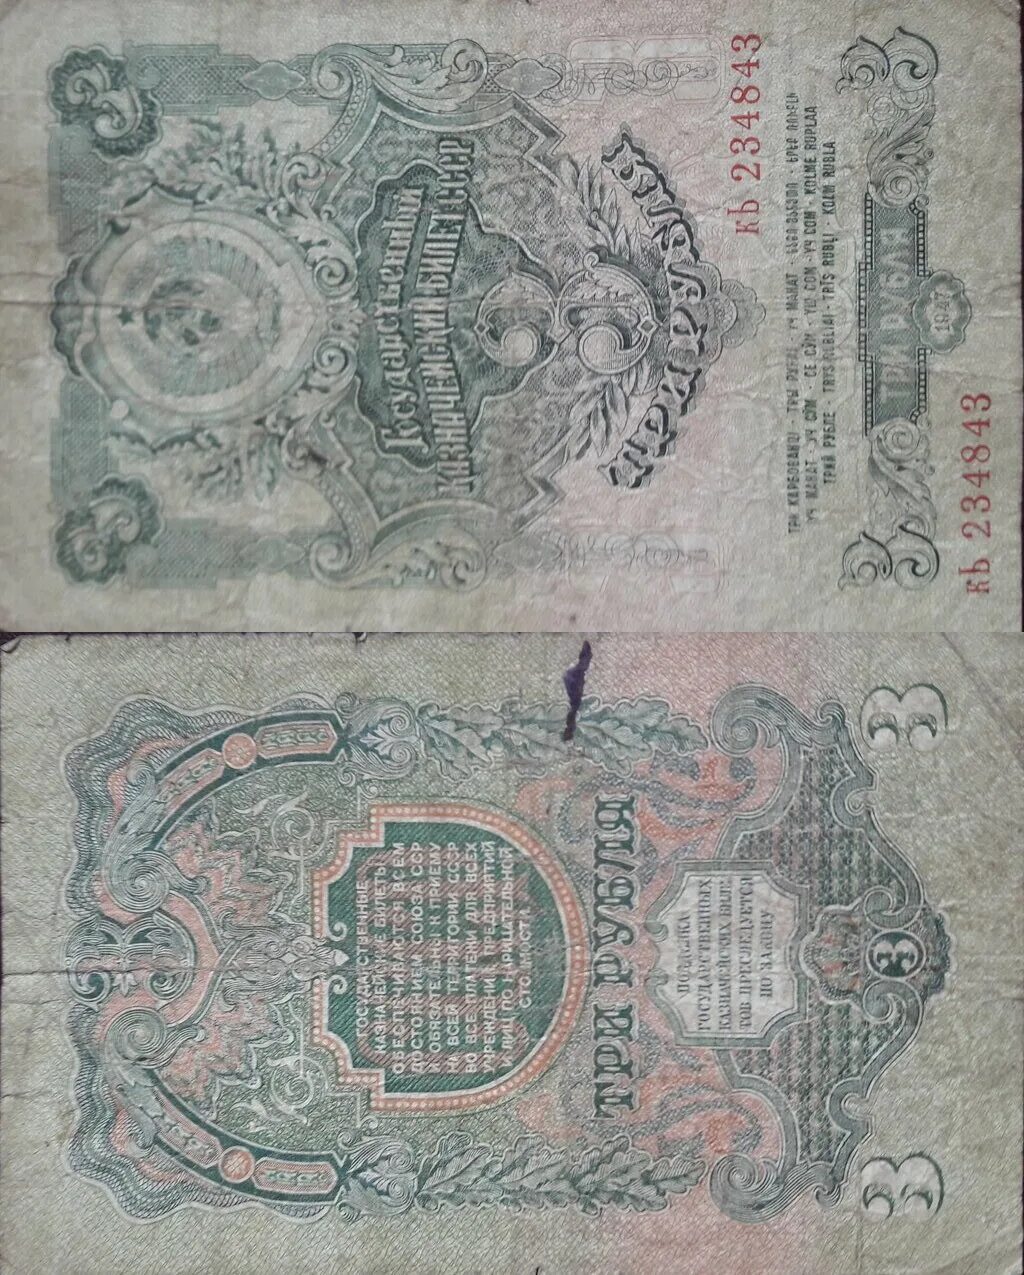 1 рубль 47 года. Рубли СССР 1947 года банкноты 3 рубля. Бумажные деньги СССР 1947 года. Купюры СССР до 1947 года. Советские деньги 3 рубля.